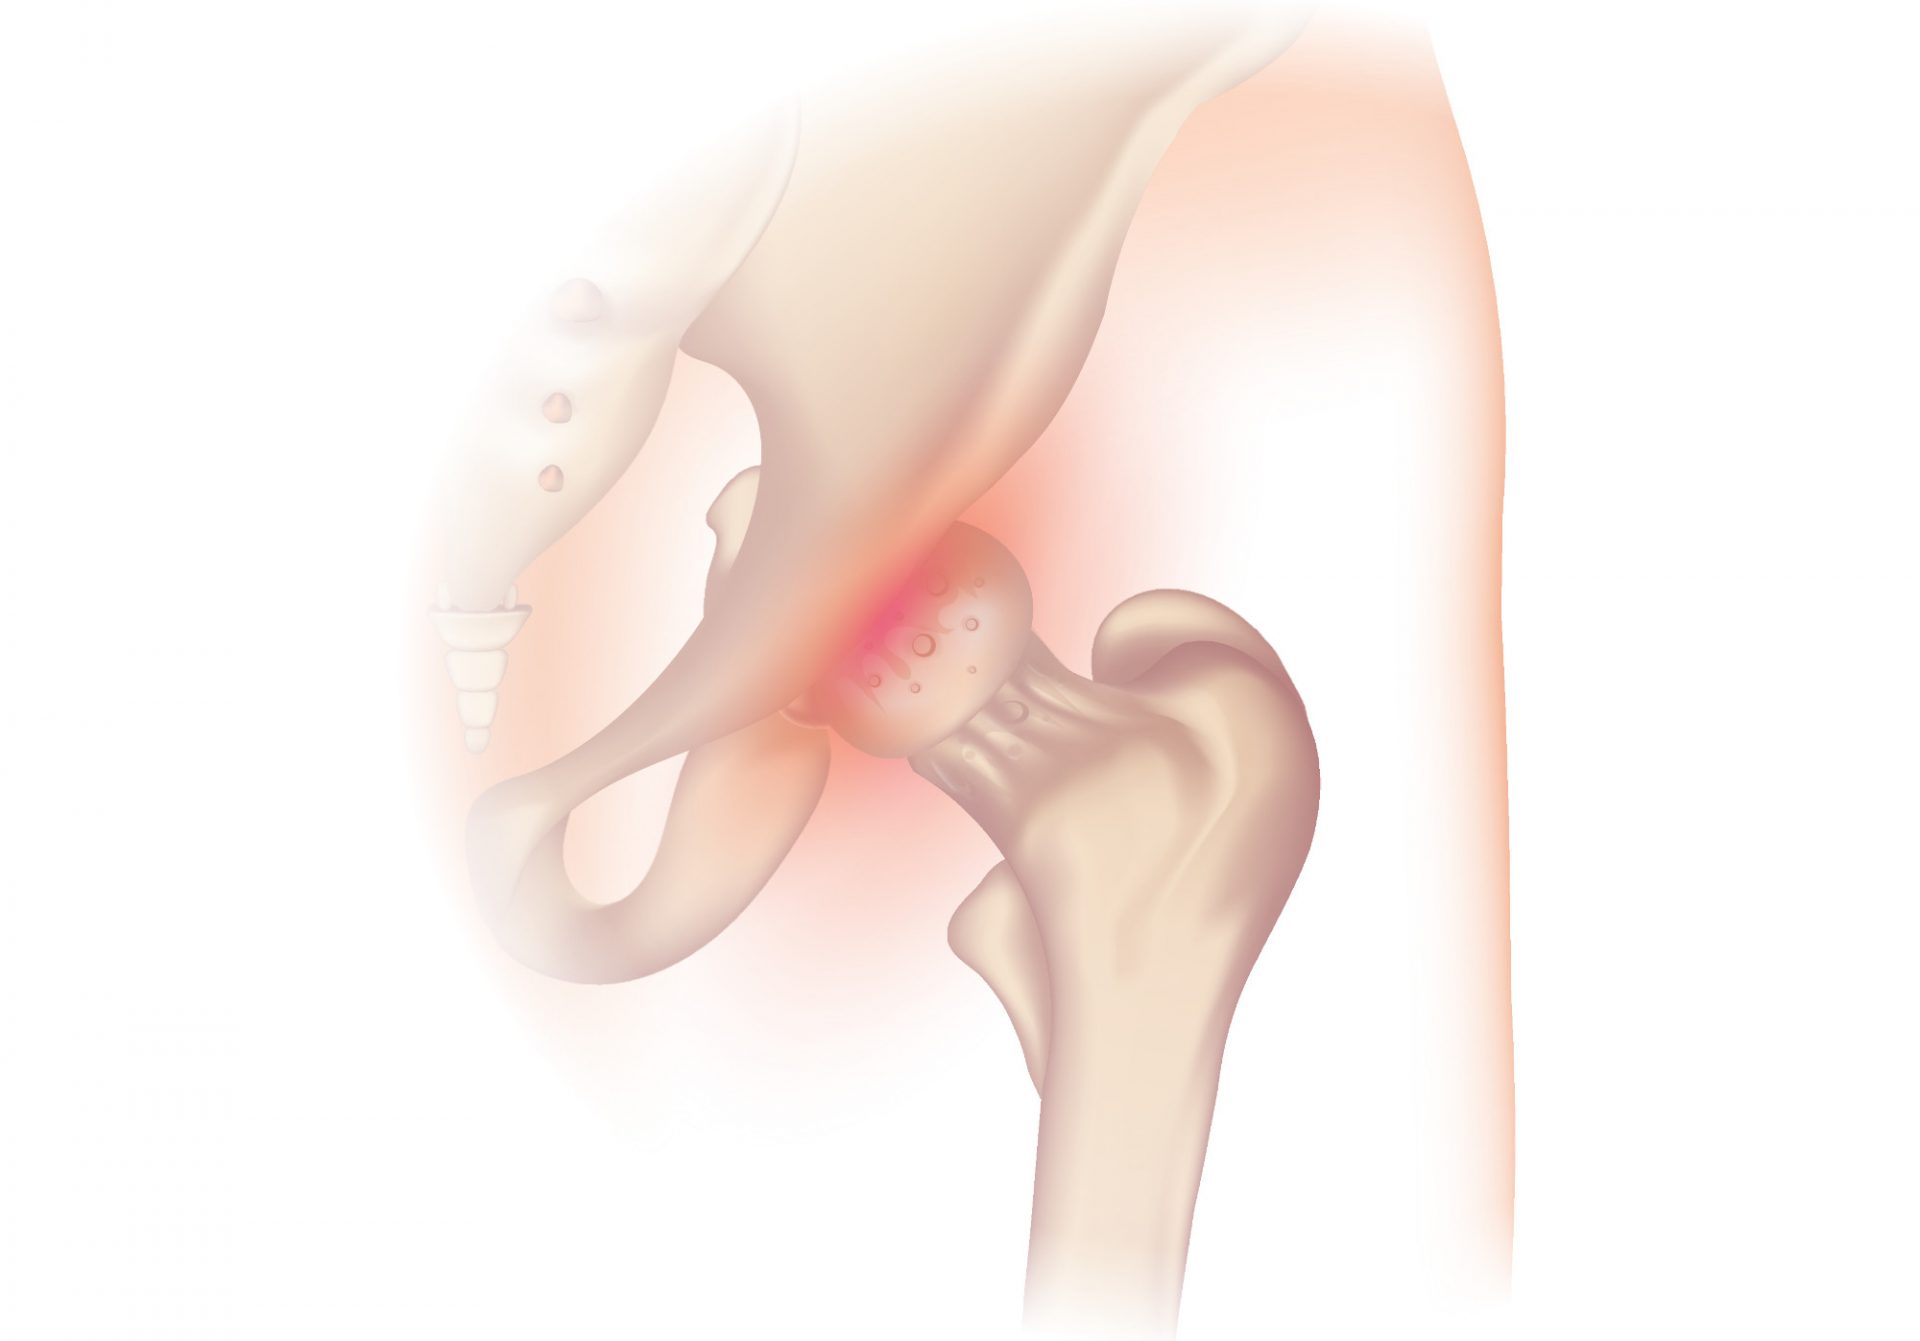 остеоартрит тазобедренного сустава, требующий протезирования тазобедренного сустава